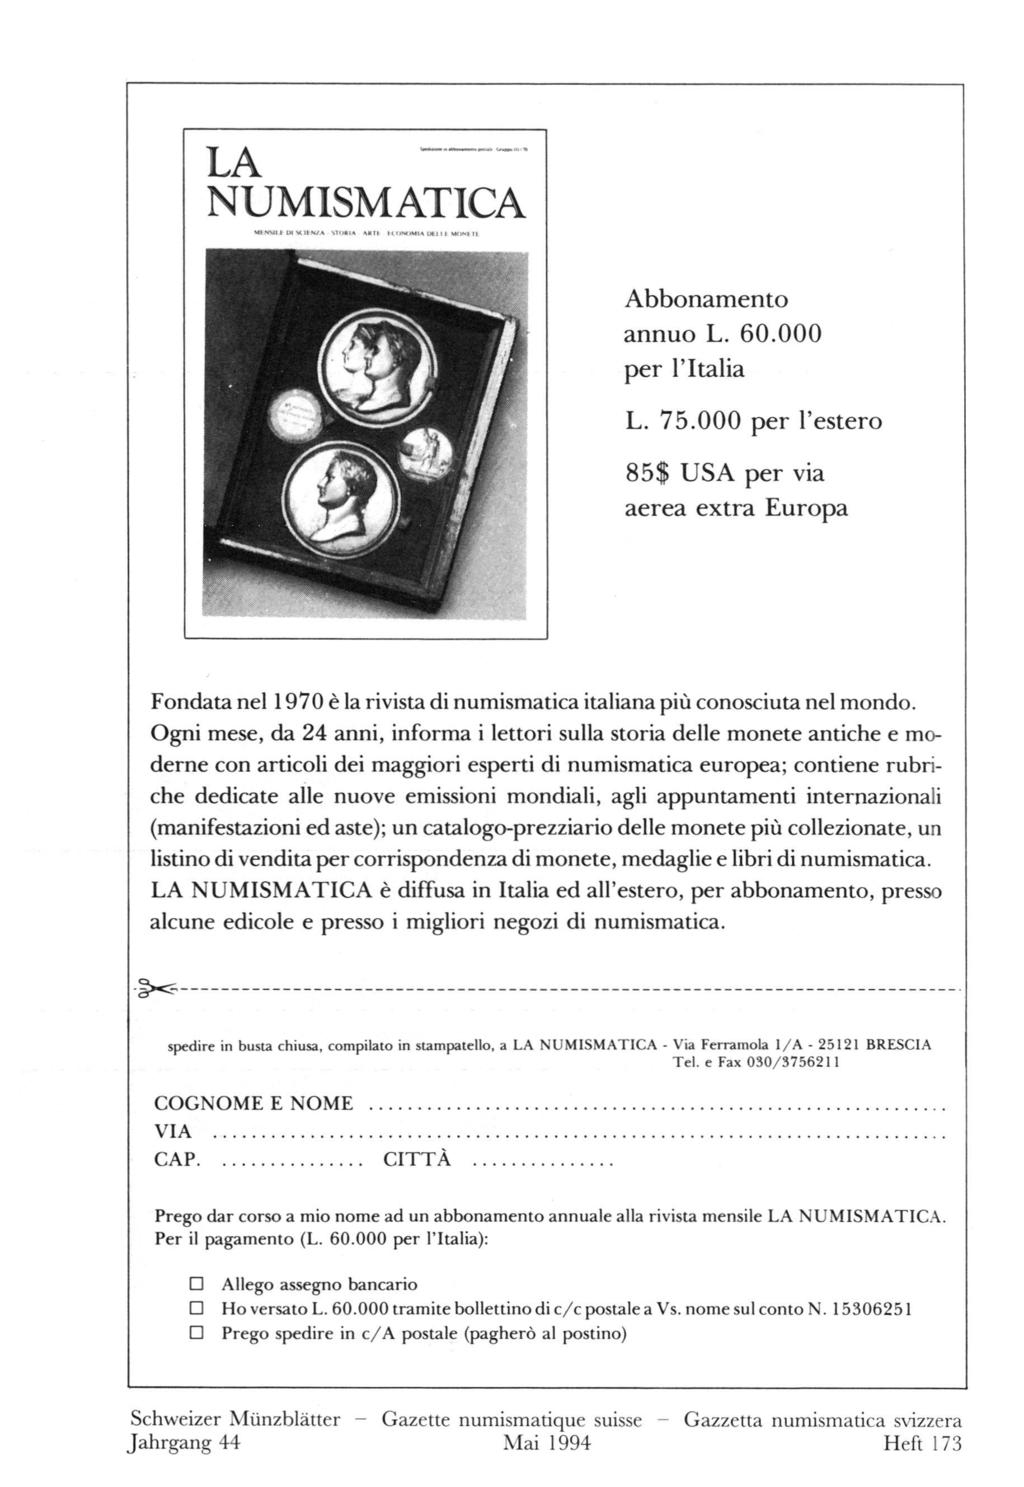 LA NUMISMATICA / Abbonamento annuo L. 60.000 per l'italia L. 75.000 per l'estero 85$ USA per via aerea extra Europa Fondata nel 1970 è la rivista di numismatica italiana più conosciuta nel mondo.